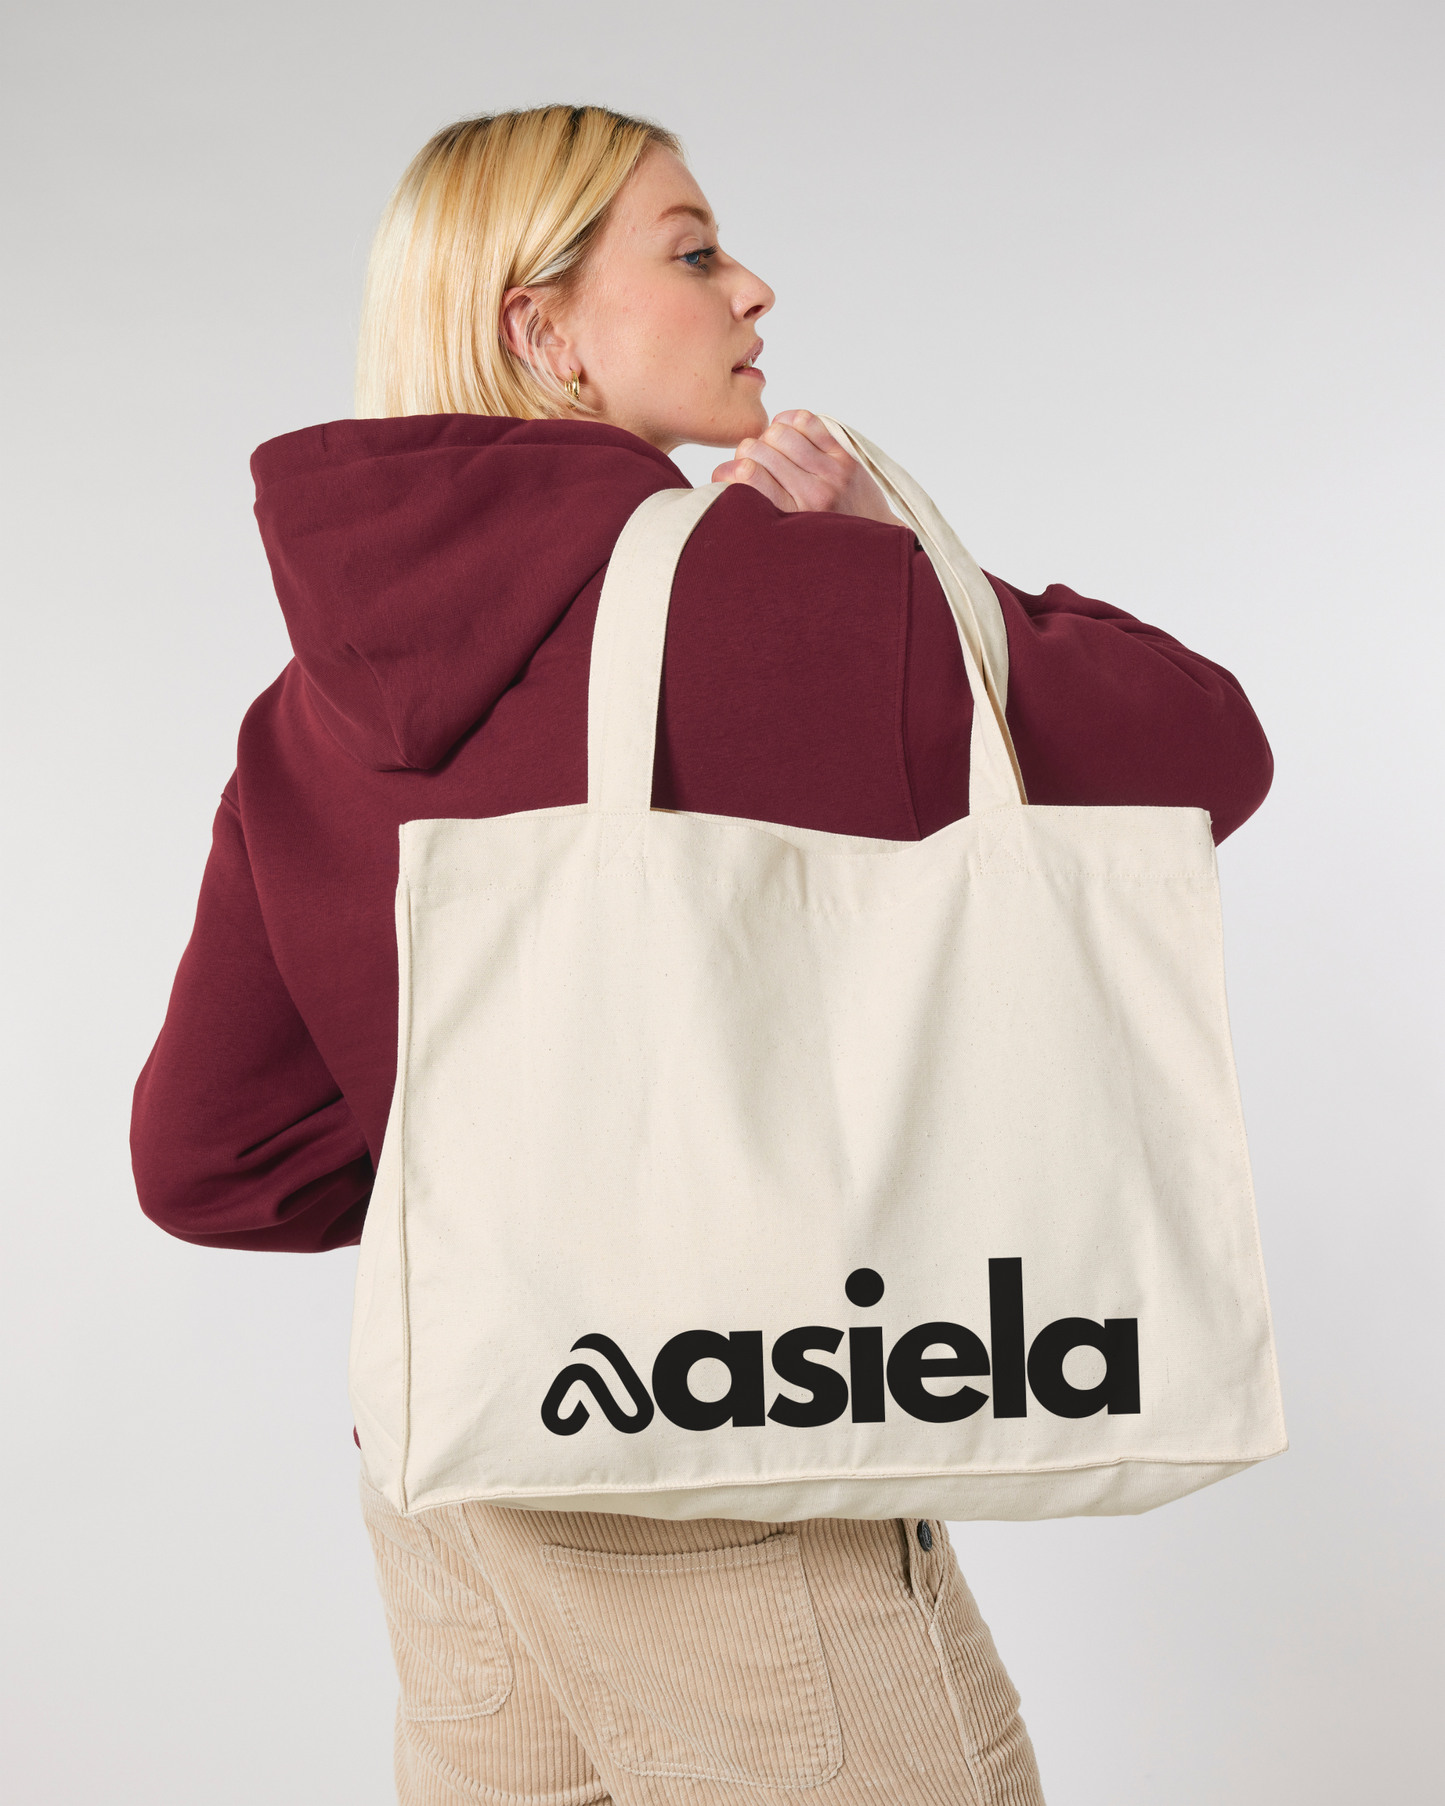 Asiela Shopping Bag - Natural